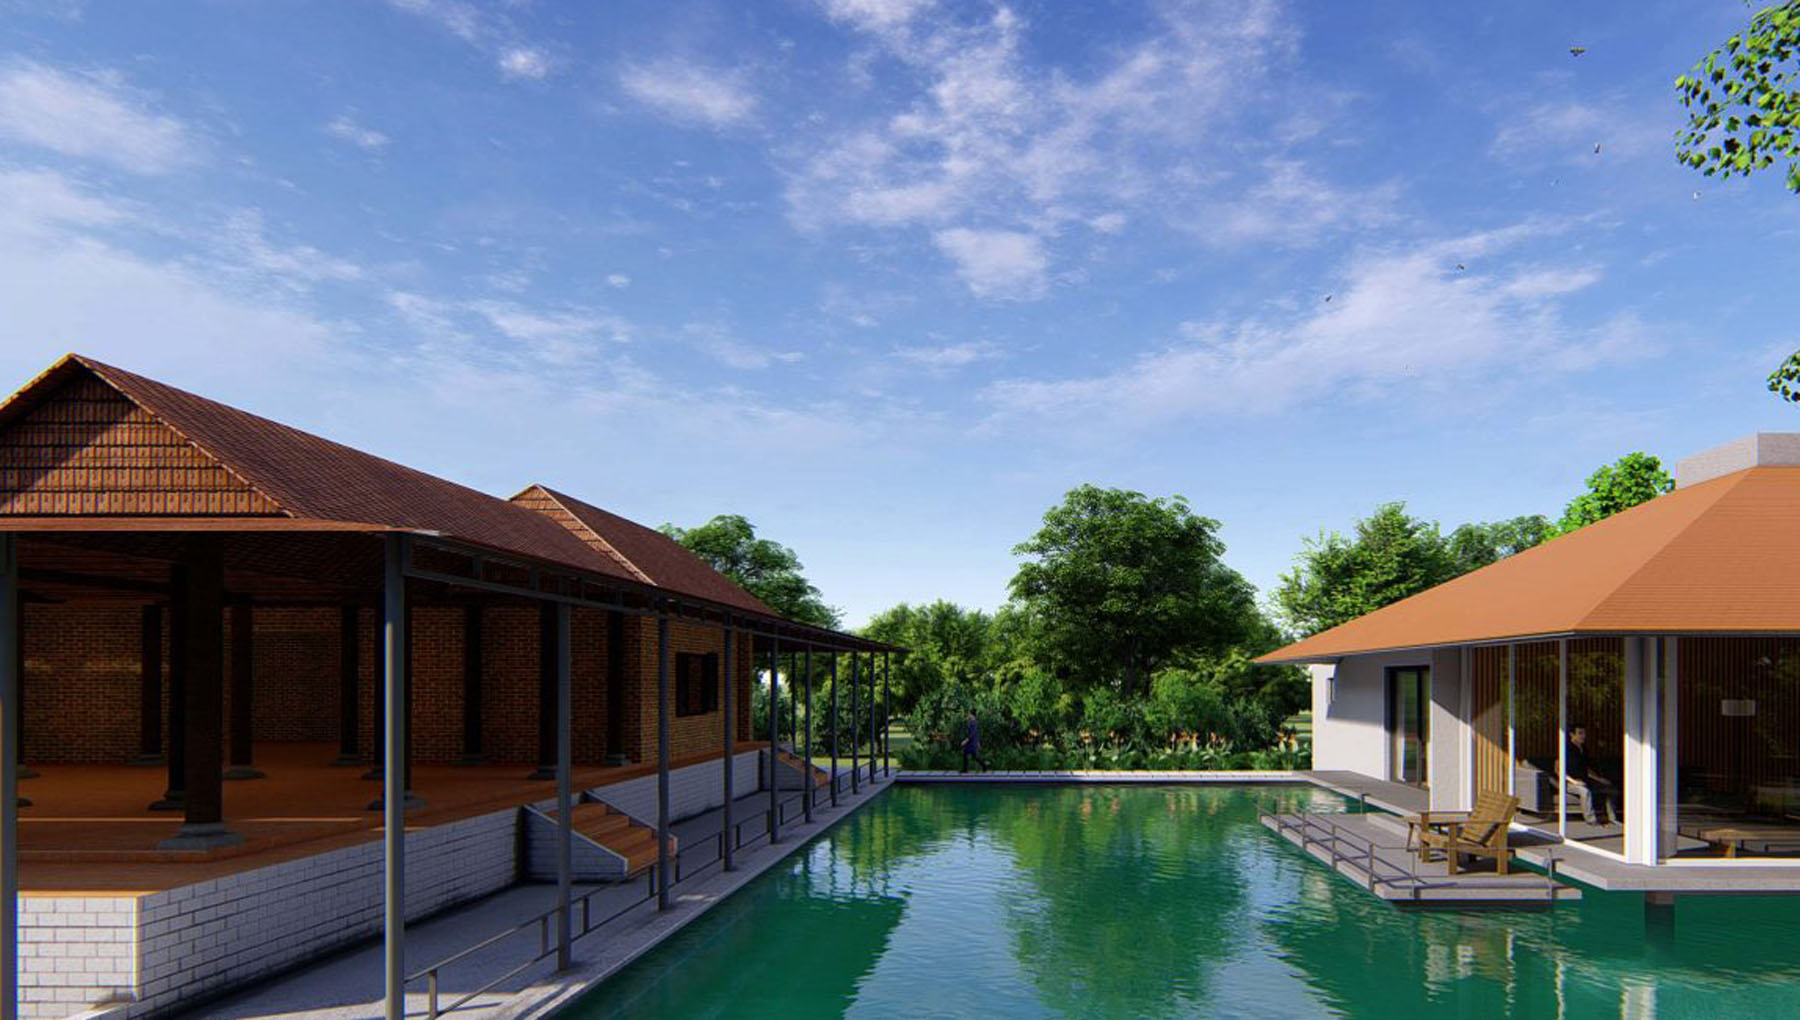 Thiết kế nhà biệt thự sân vườn, bể bơi thư giãn phù hợp cho nghỉ dưỡng